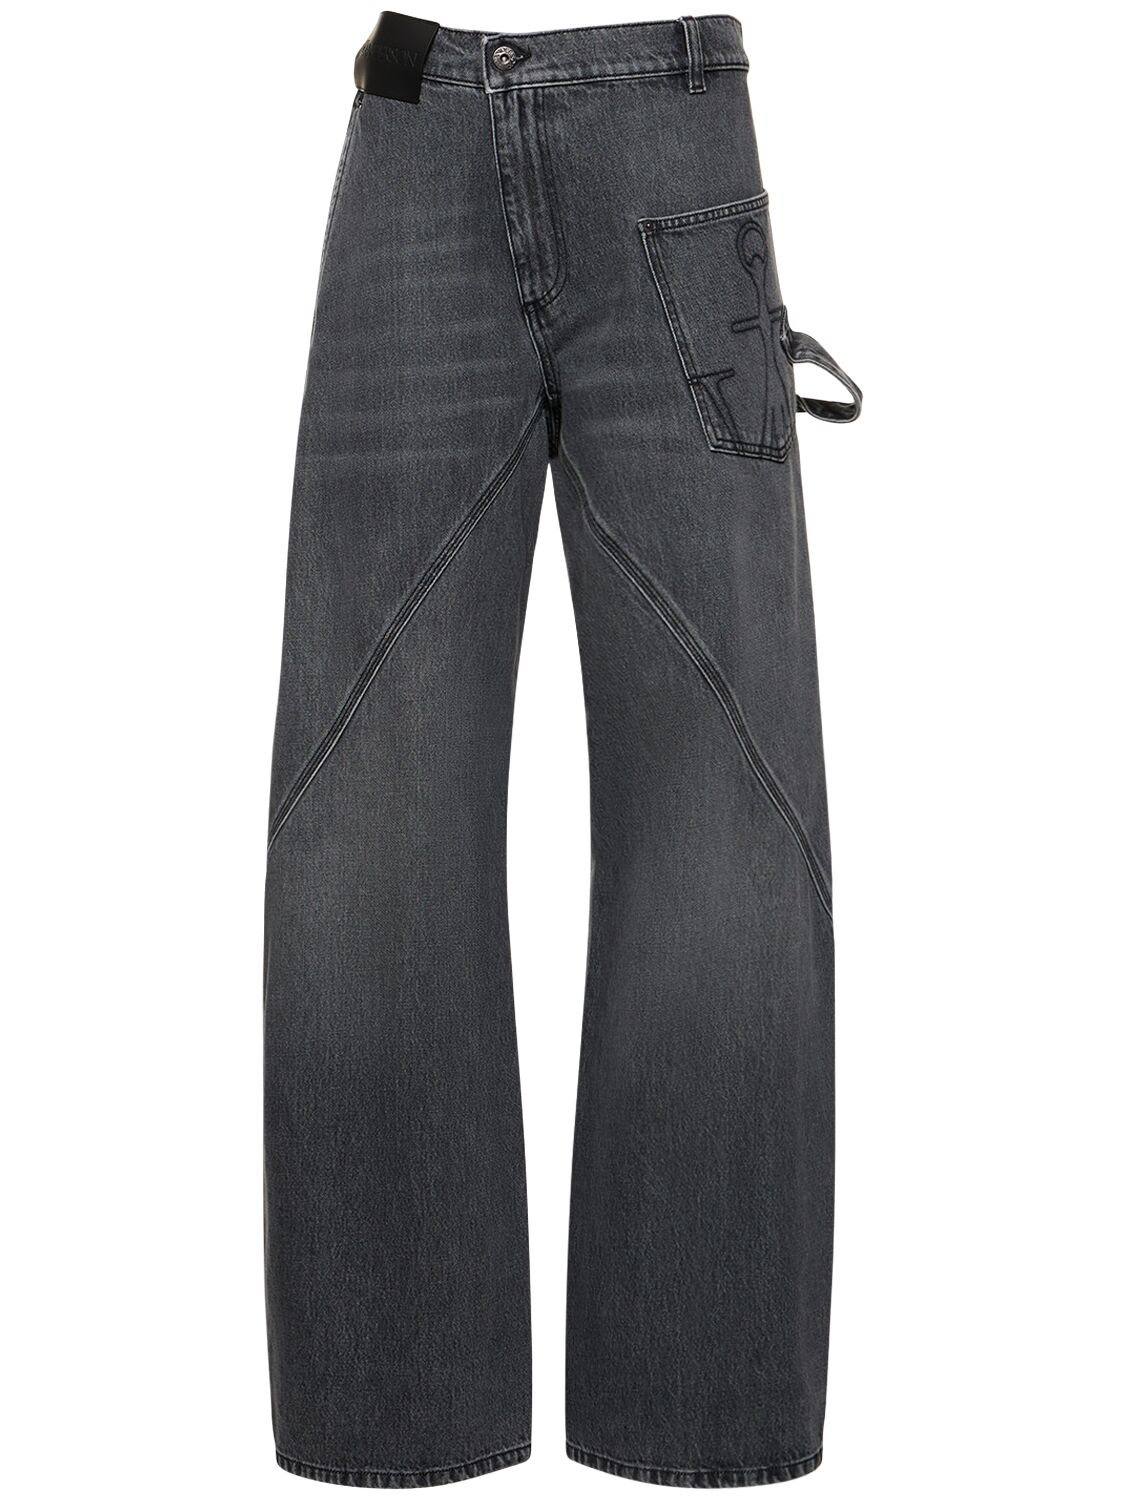 Image of Embroidered Pocket Denim Cargo Jeans